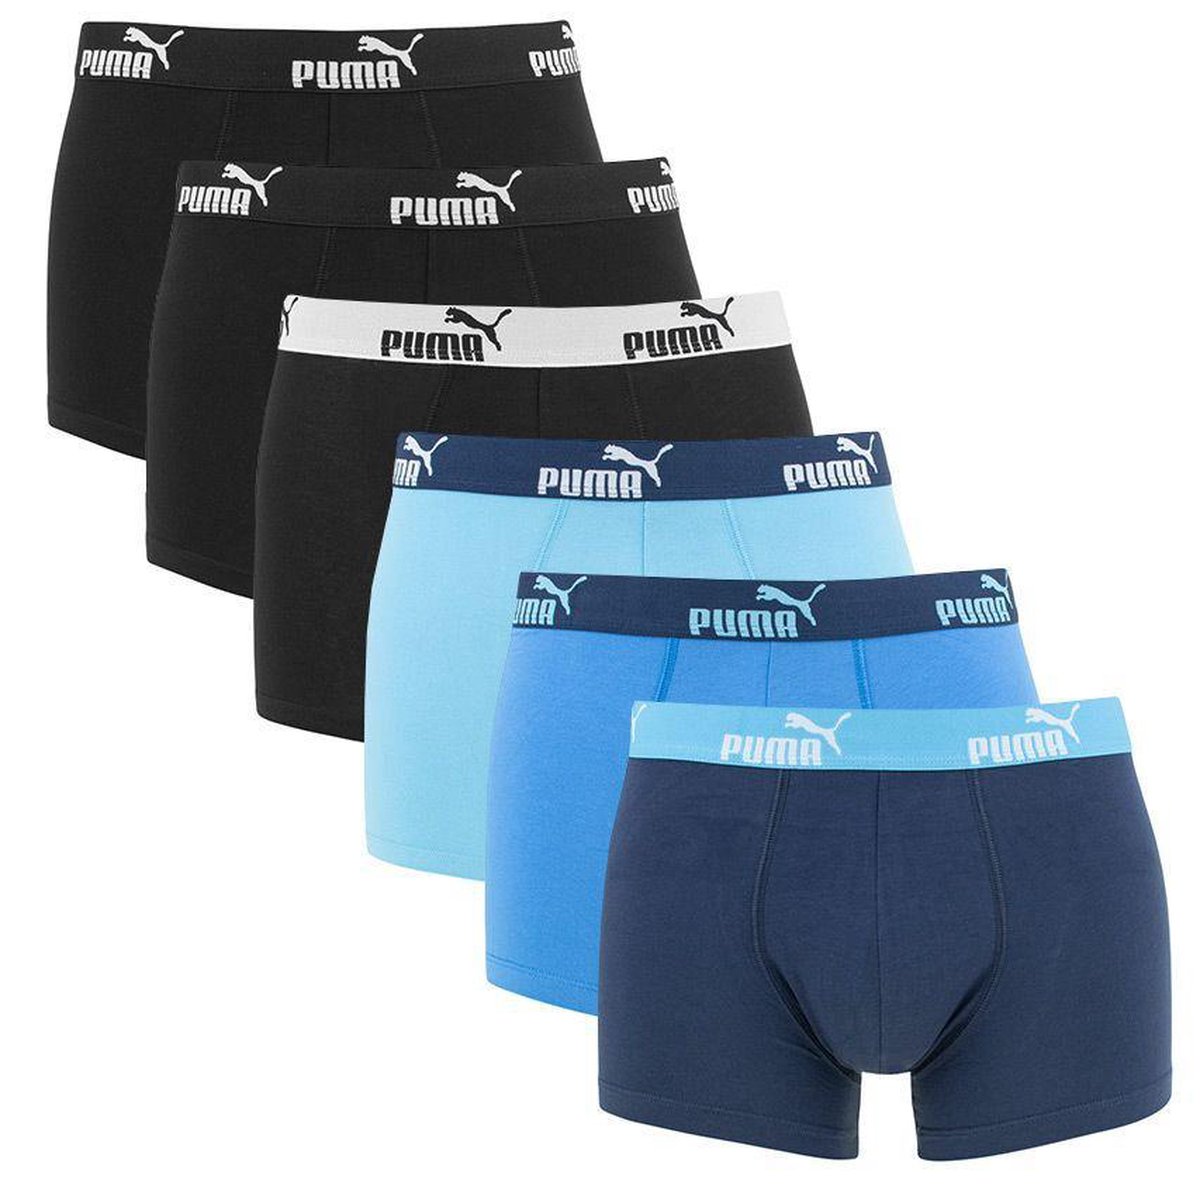 Pigment ik ben slaperig toegang PUMA - basic 6-pack heren boxershorts zwart/blauw - maat L | bol.com